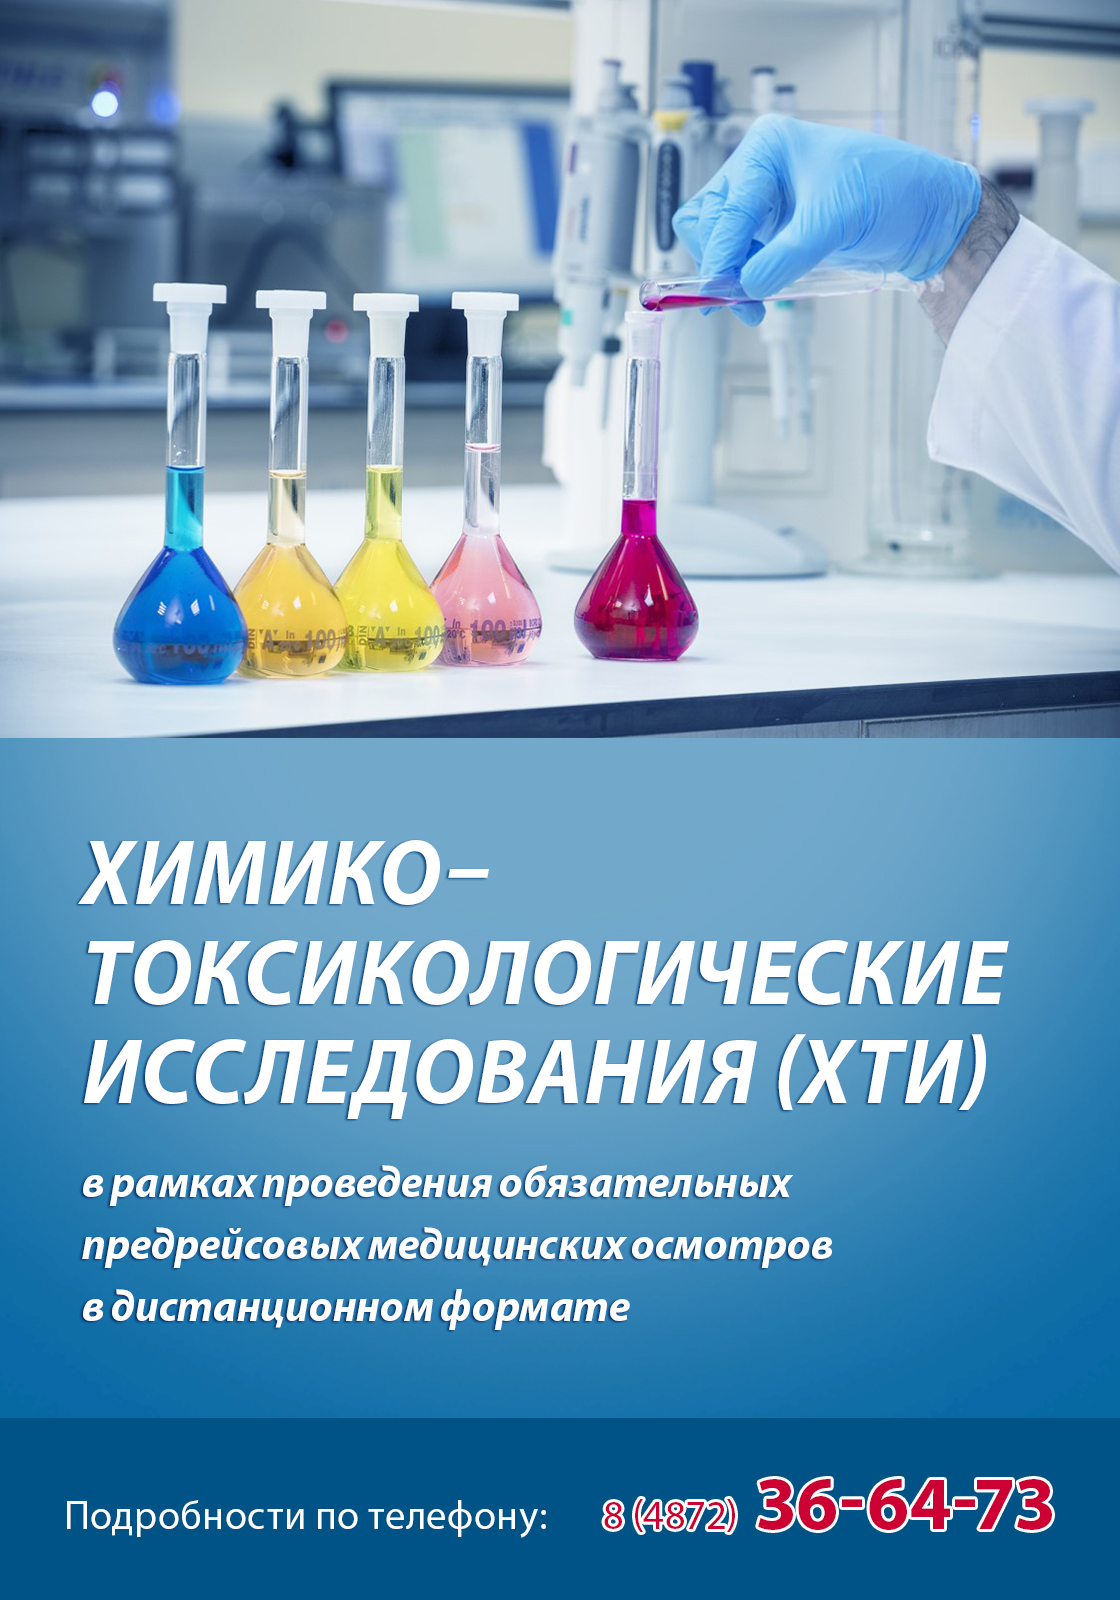 Проведение обязательных химико–токсикологических исследований (ХТИ)